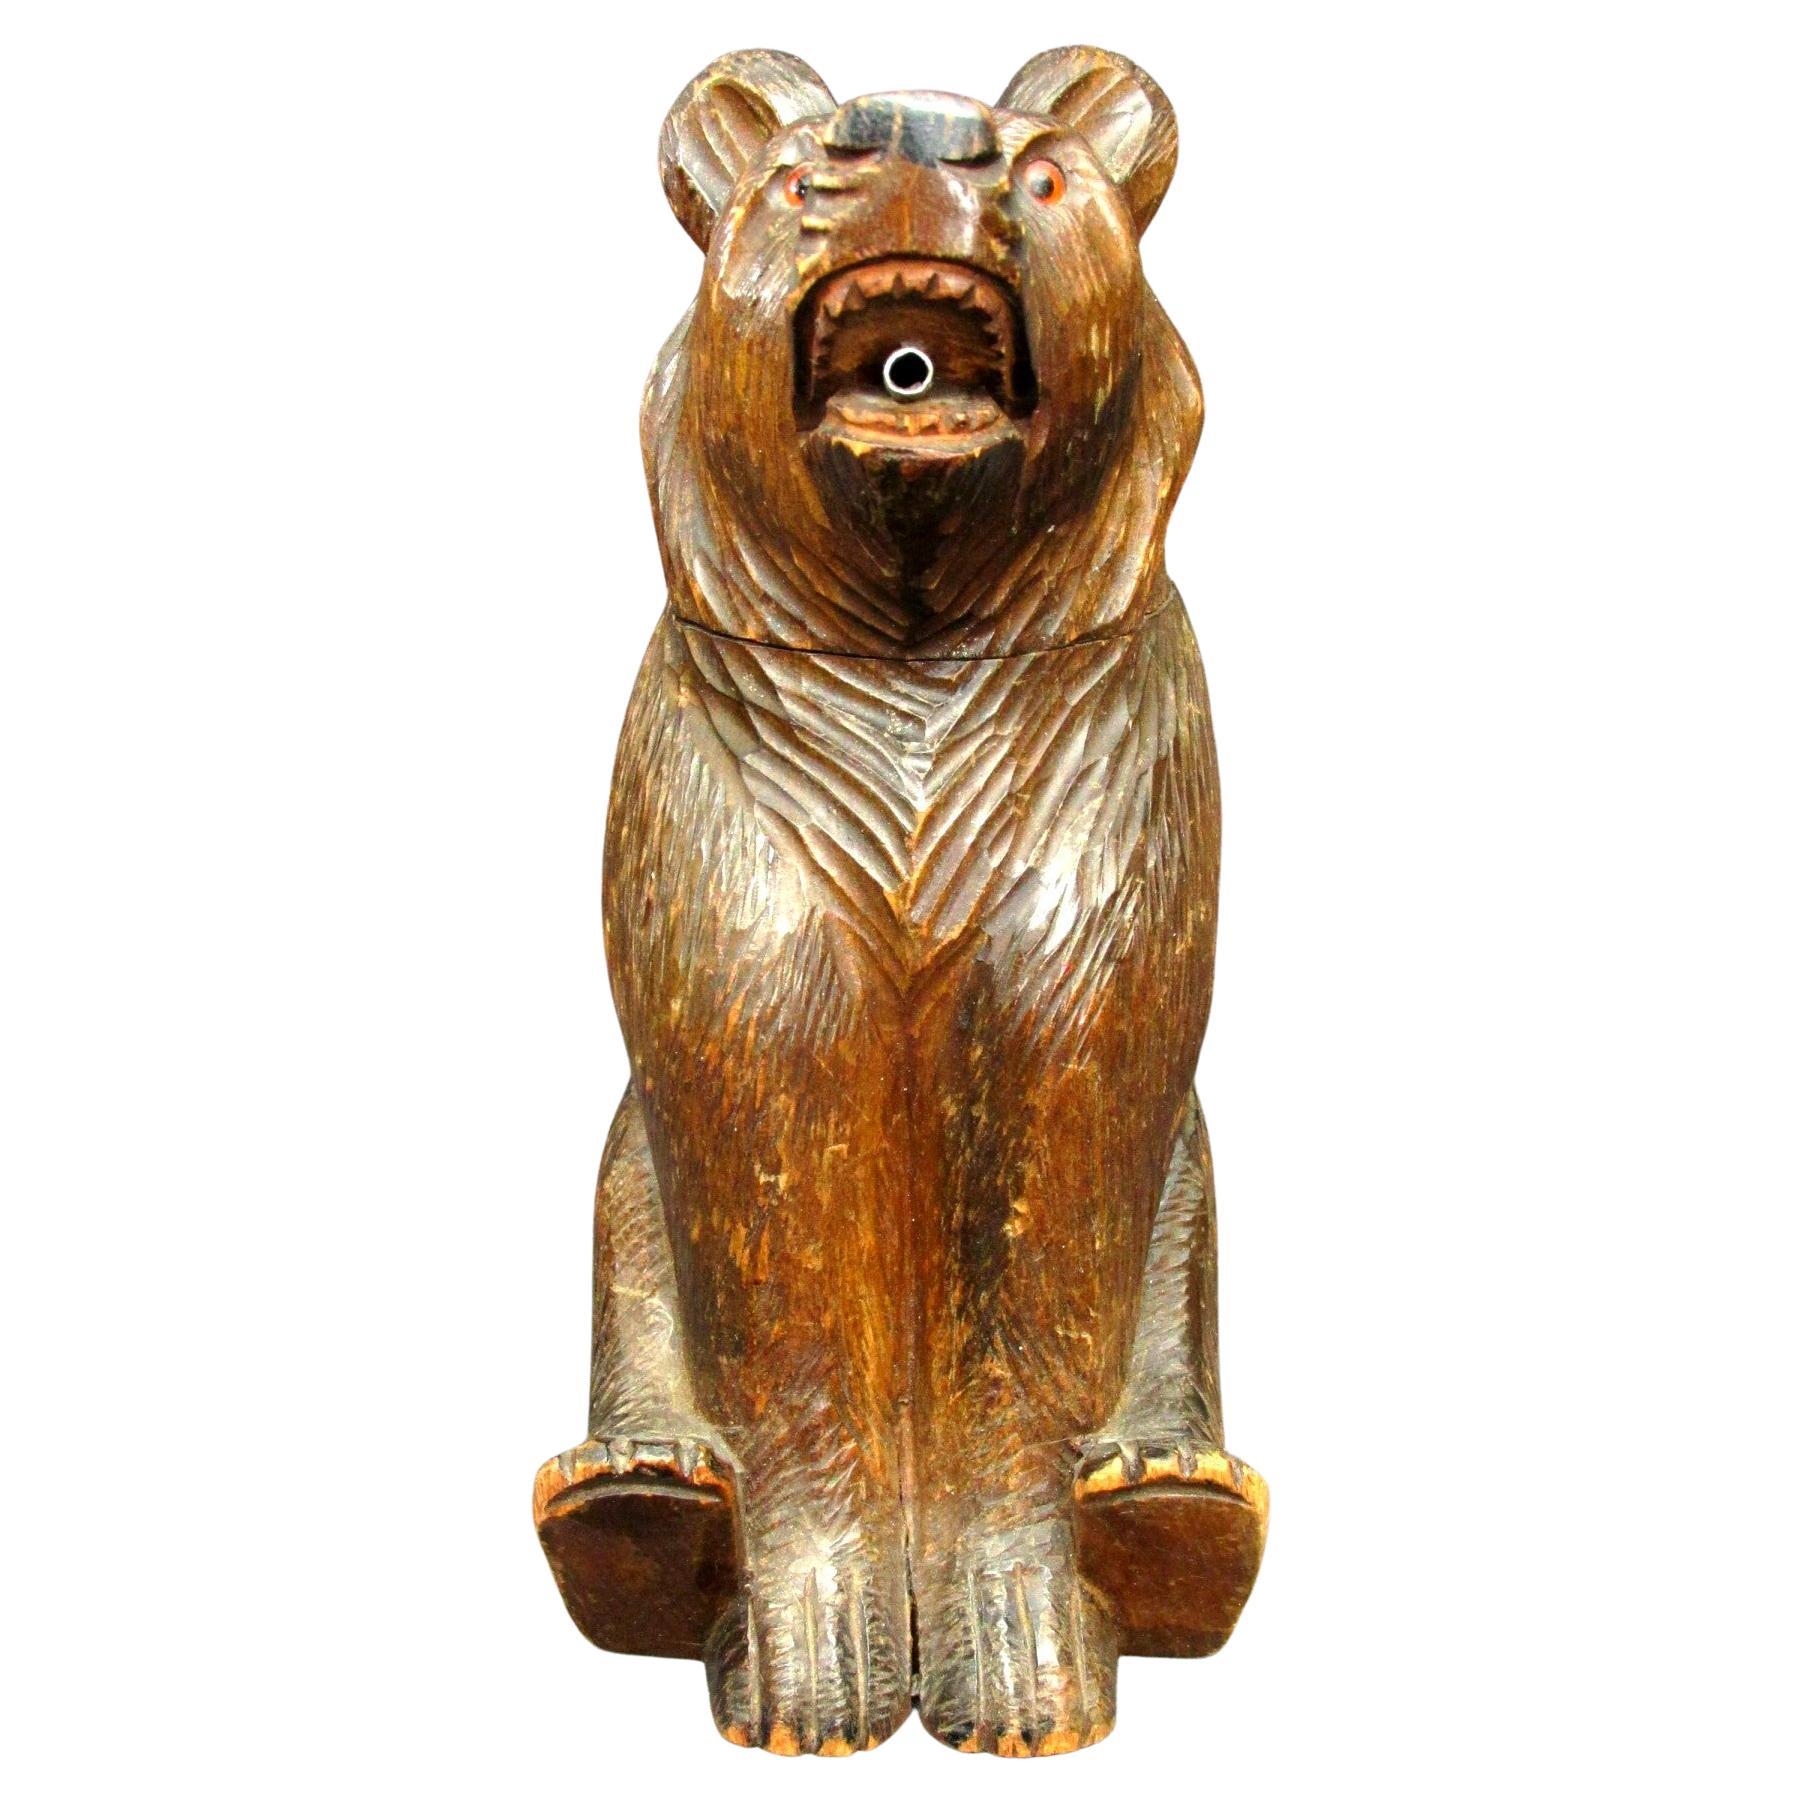 Eine seltene, handgeschnitzte Lindenholzfigur eines sitzenden Bären, die mit einem abnehmbaren Kopf mit bernsteinfarbenen Glasaugen ausgestattet ist und deren Mund mit einer Ausgusstülle versehen ist.